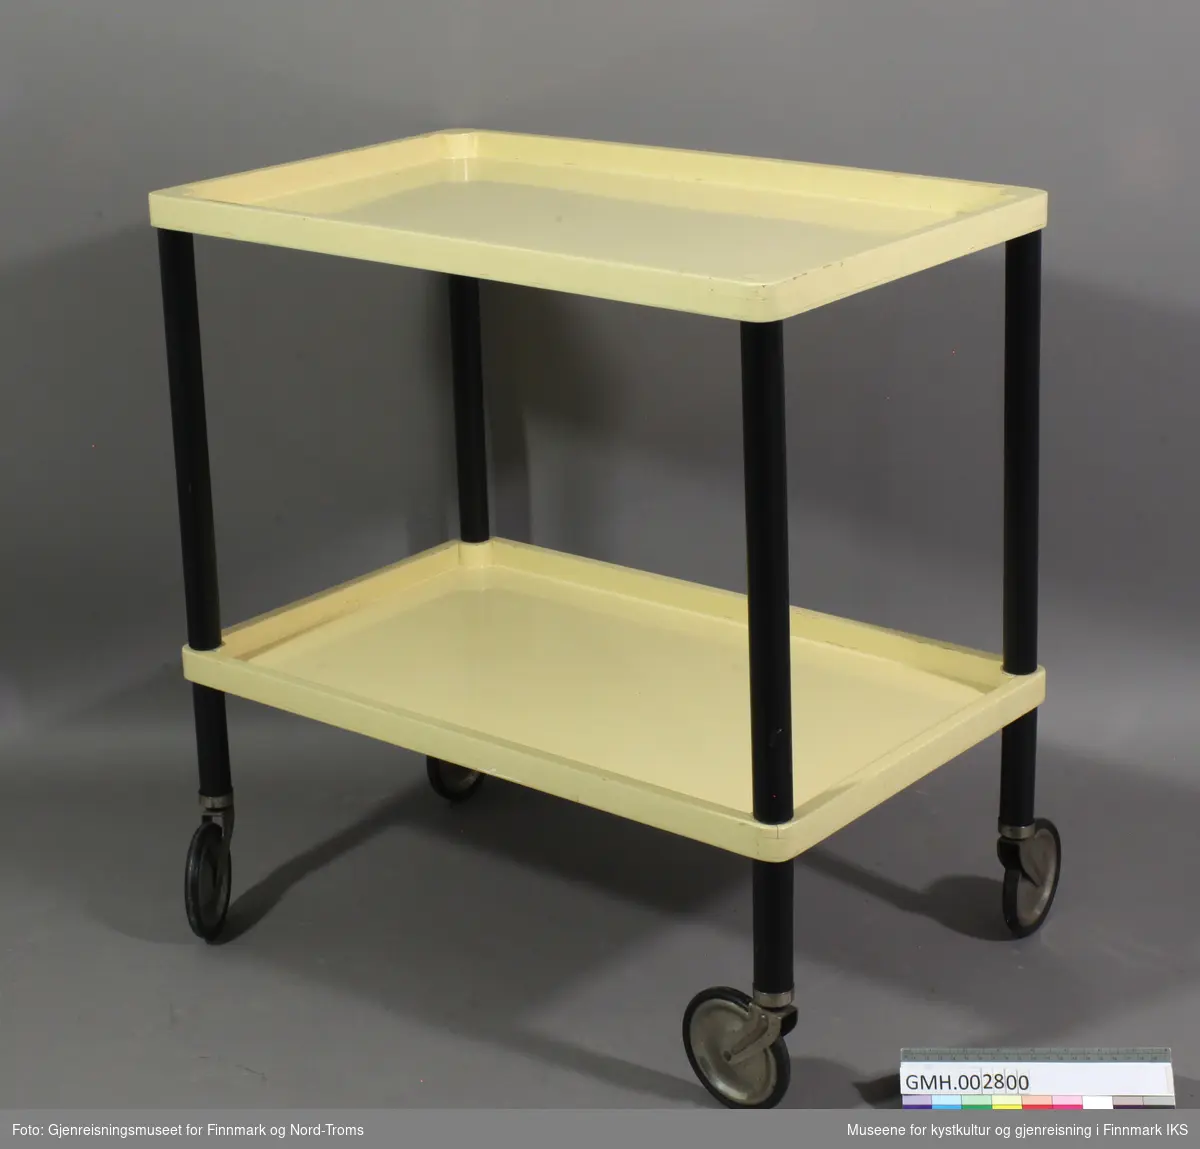 Tebordet er et lite bord på svinghjul som har to etasjer. Brettene og ben er sammenføyd gjennom skruforbindelser noe som gjør at bordet kan være flatpakket. Hjulene består av metall og svart hardgummi.